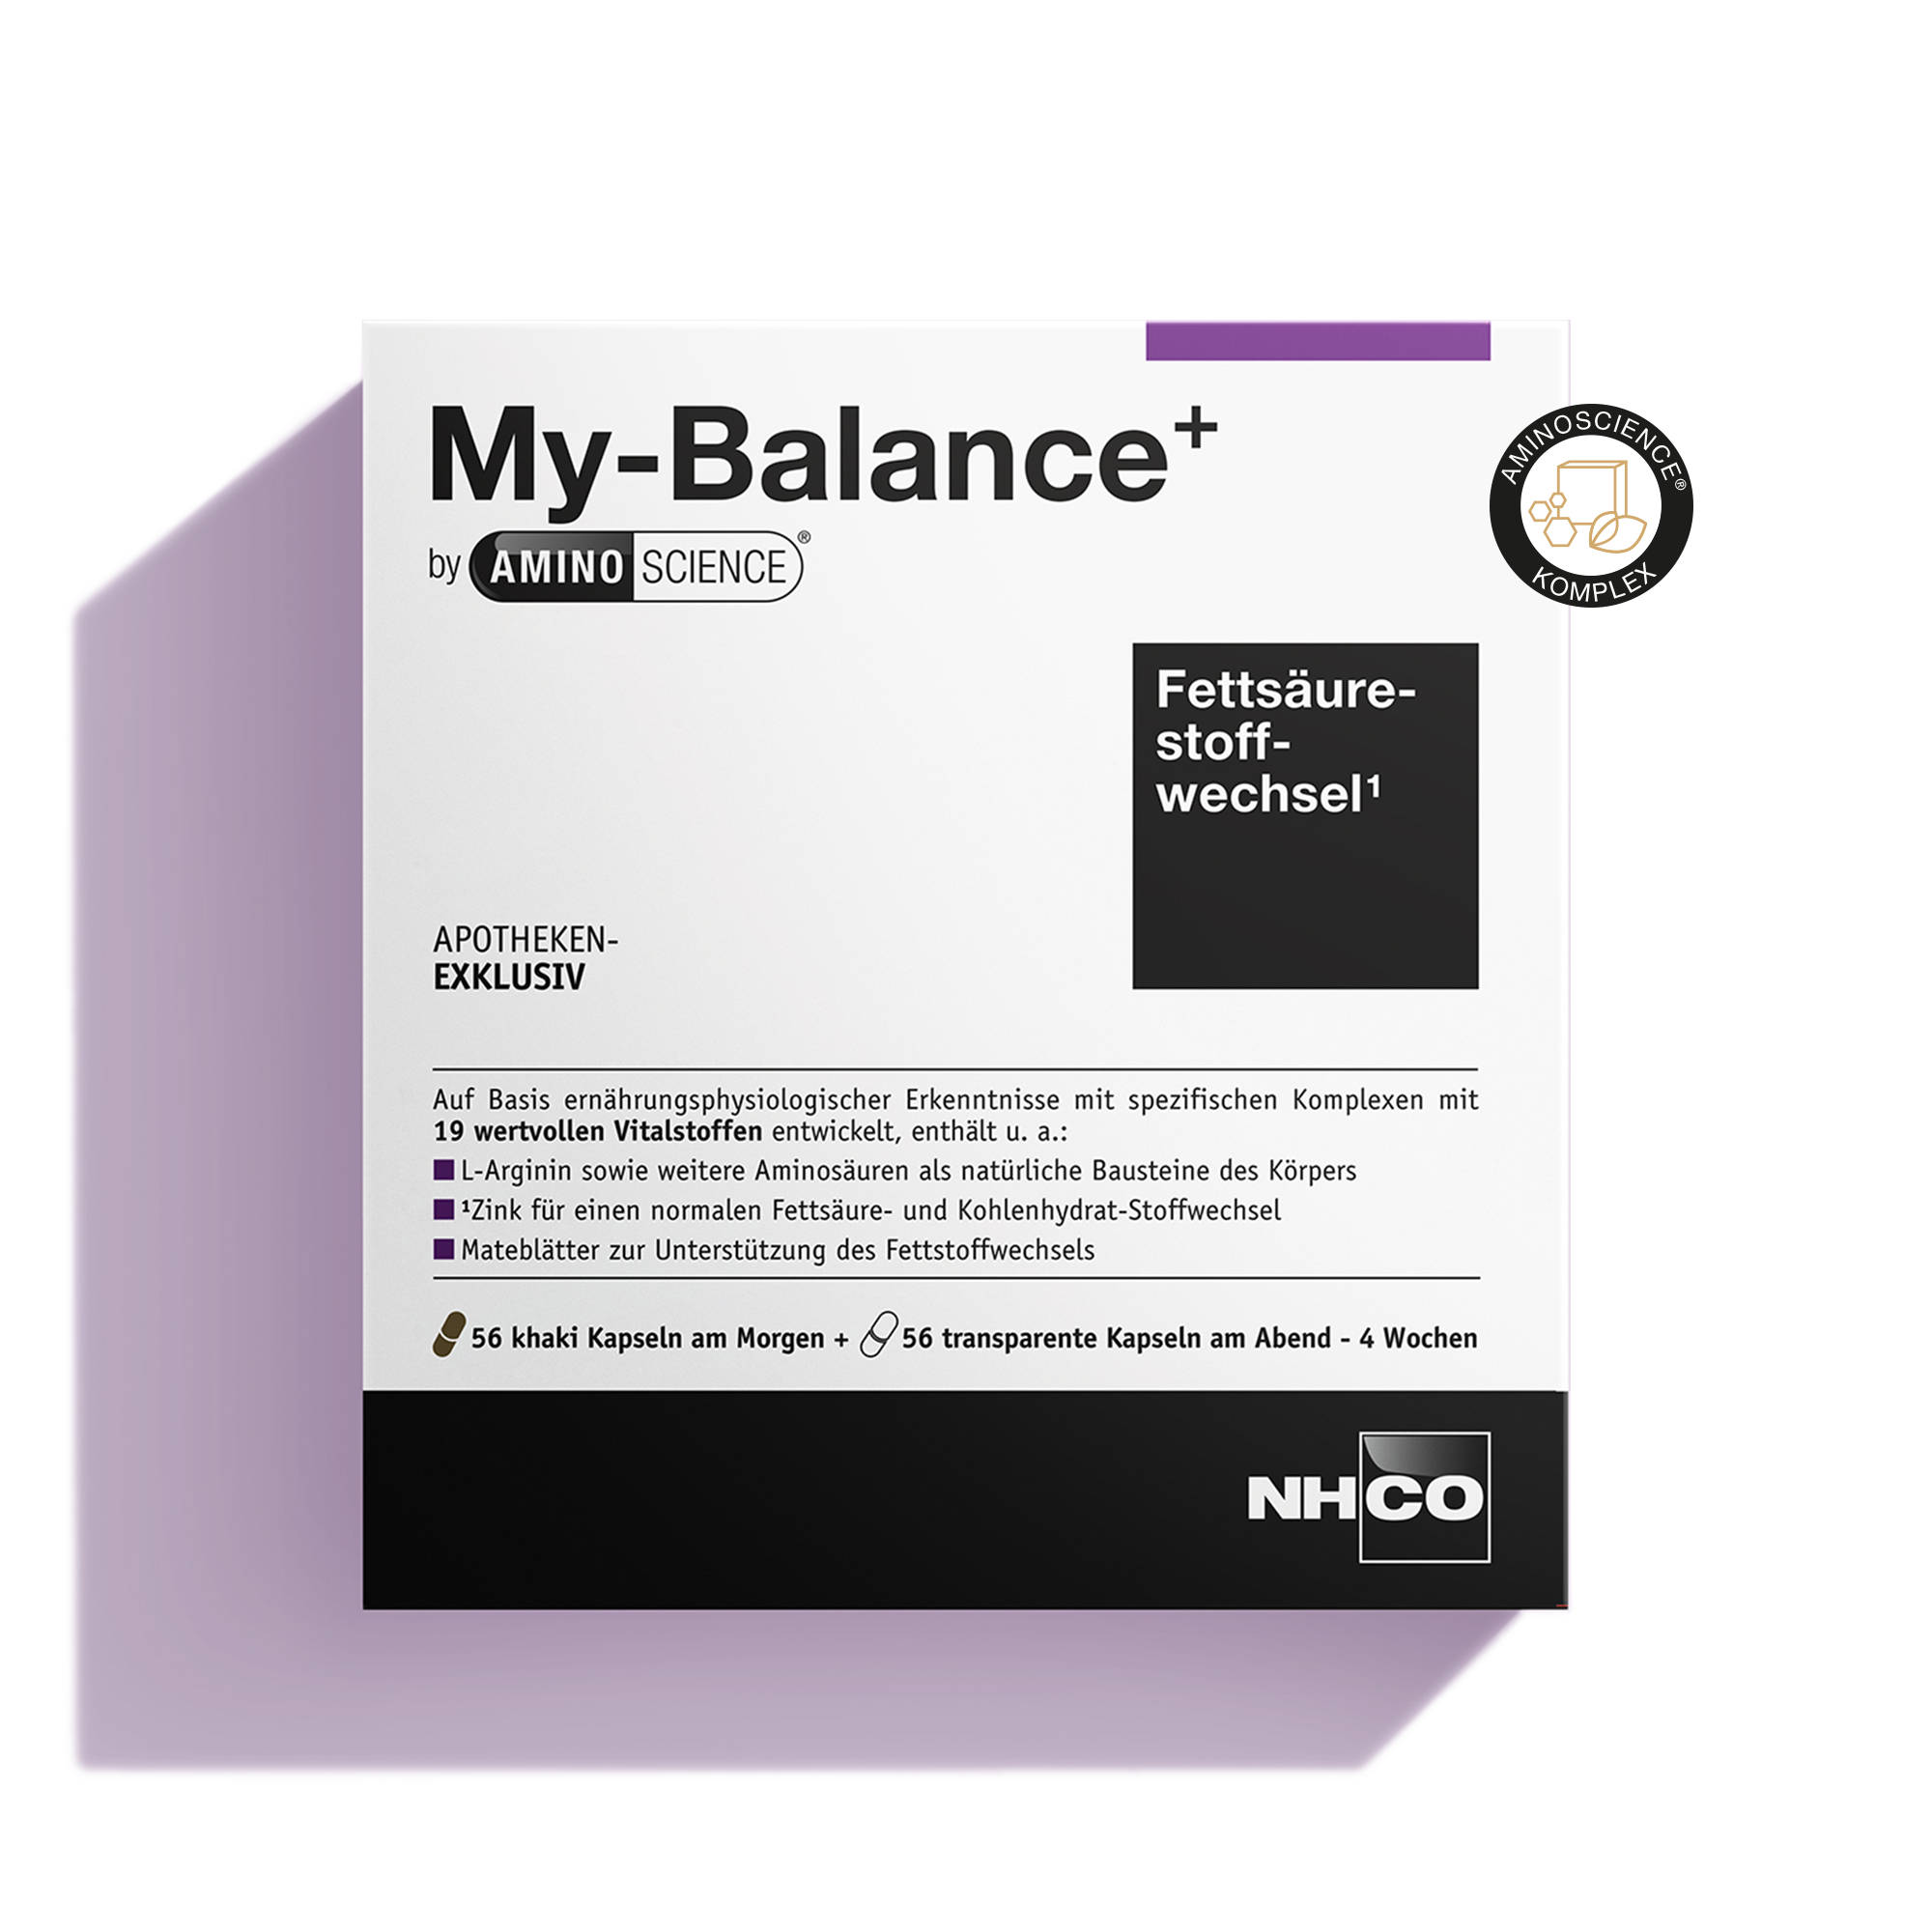 Verpackung von My Balance+ AminoScience, Nahrungsergänzung für den Fettstoffwechsel.